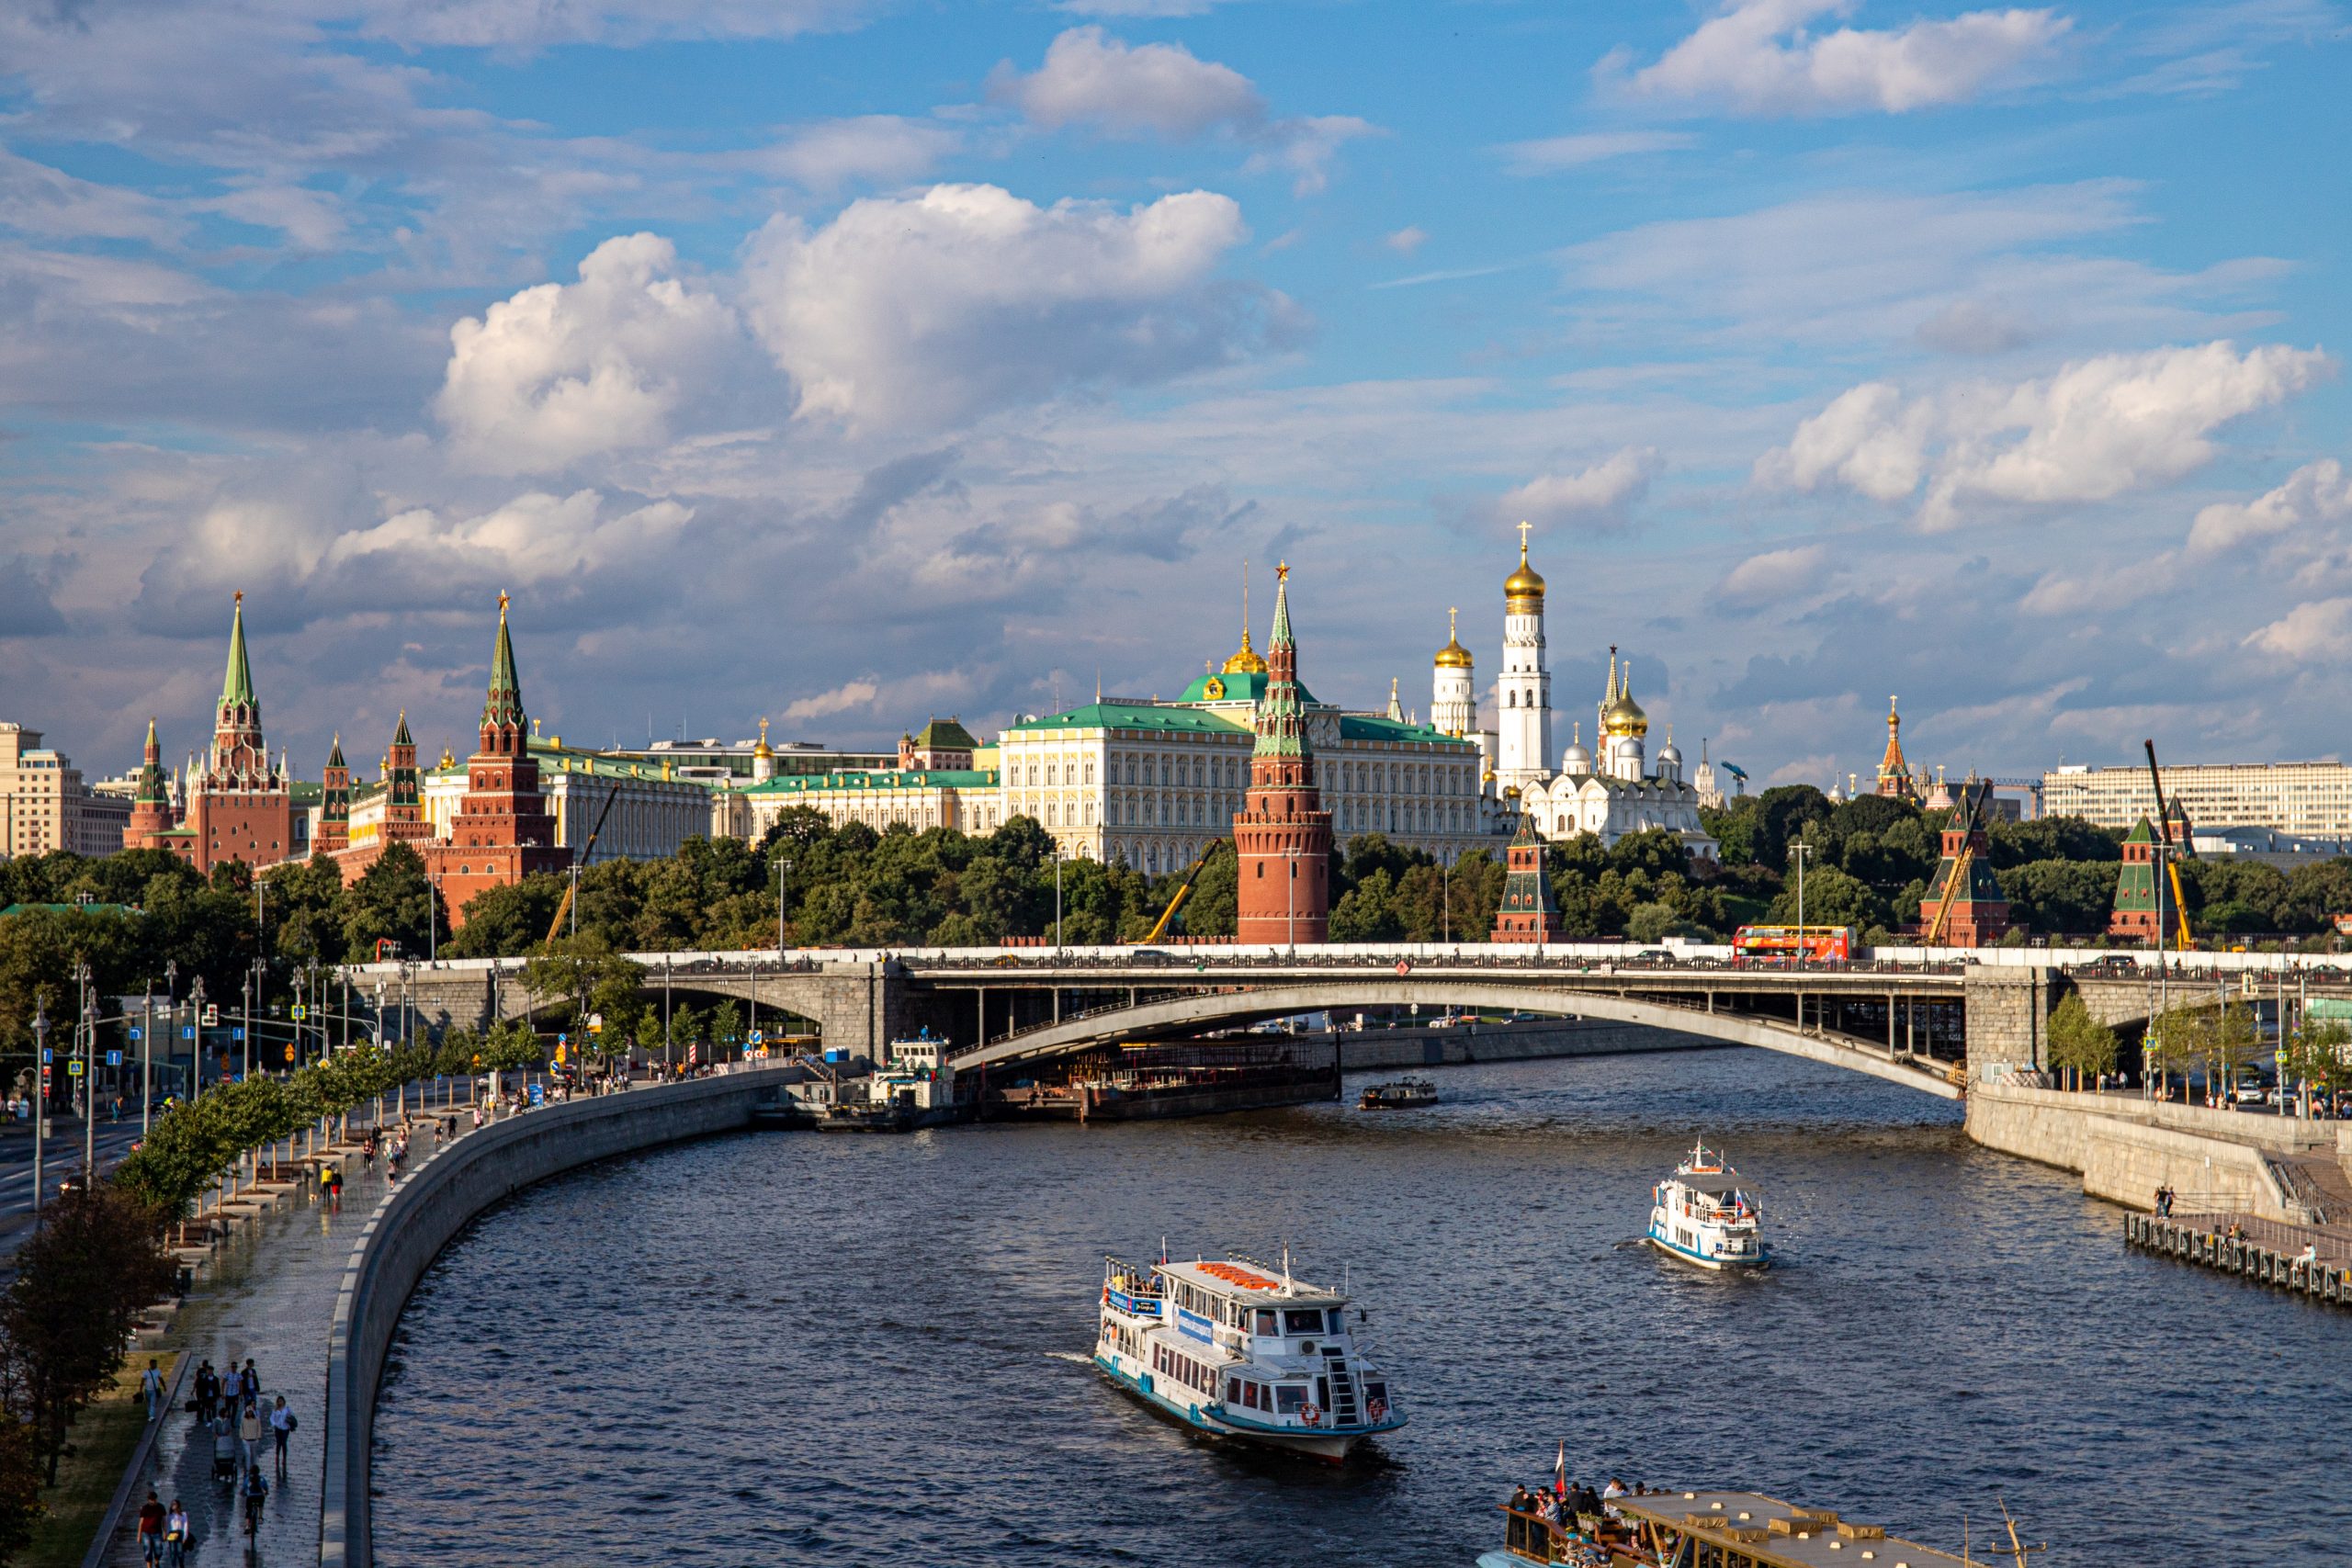 Ρωσία: Νέα ένεση ρευστότητας από τα ενεργειακά έσοδα για το έκτακτο αποθεματικό ταμείο